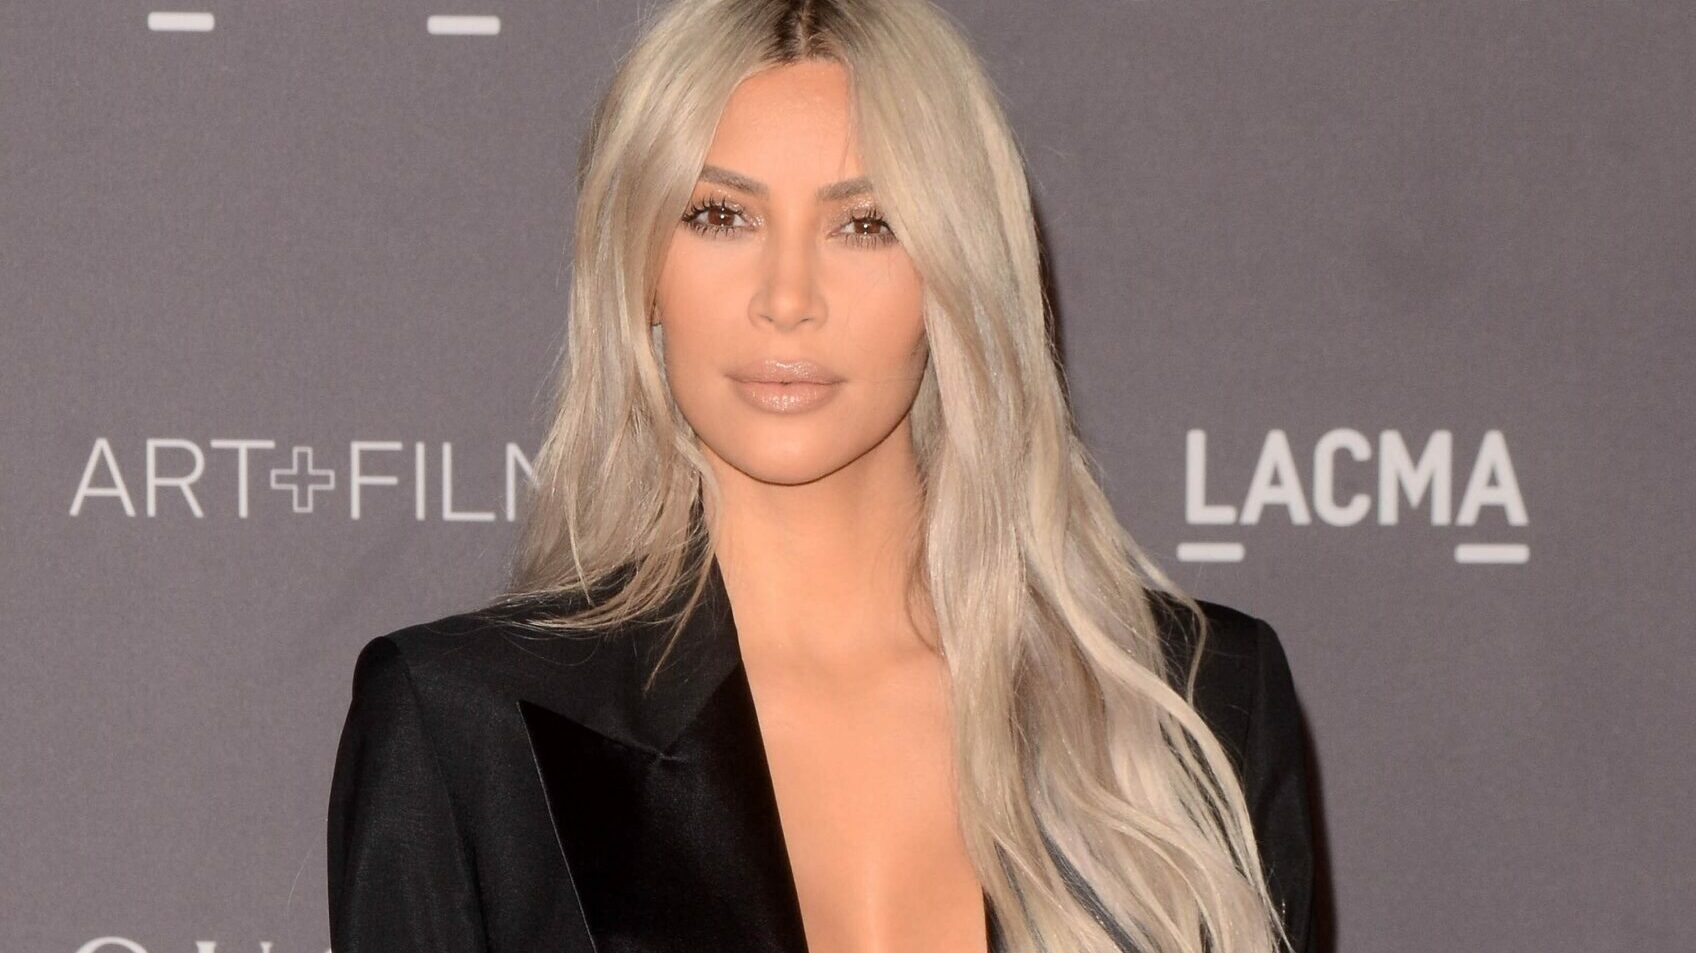 La ‘influencer’ Kim Kardashian y su excuñado, Scott Disick se enfrentan a una demanda multimillonaria. A los dos se le acusa de haber promocionado un sorteo fraudulento